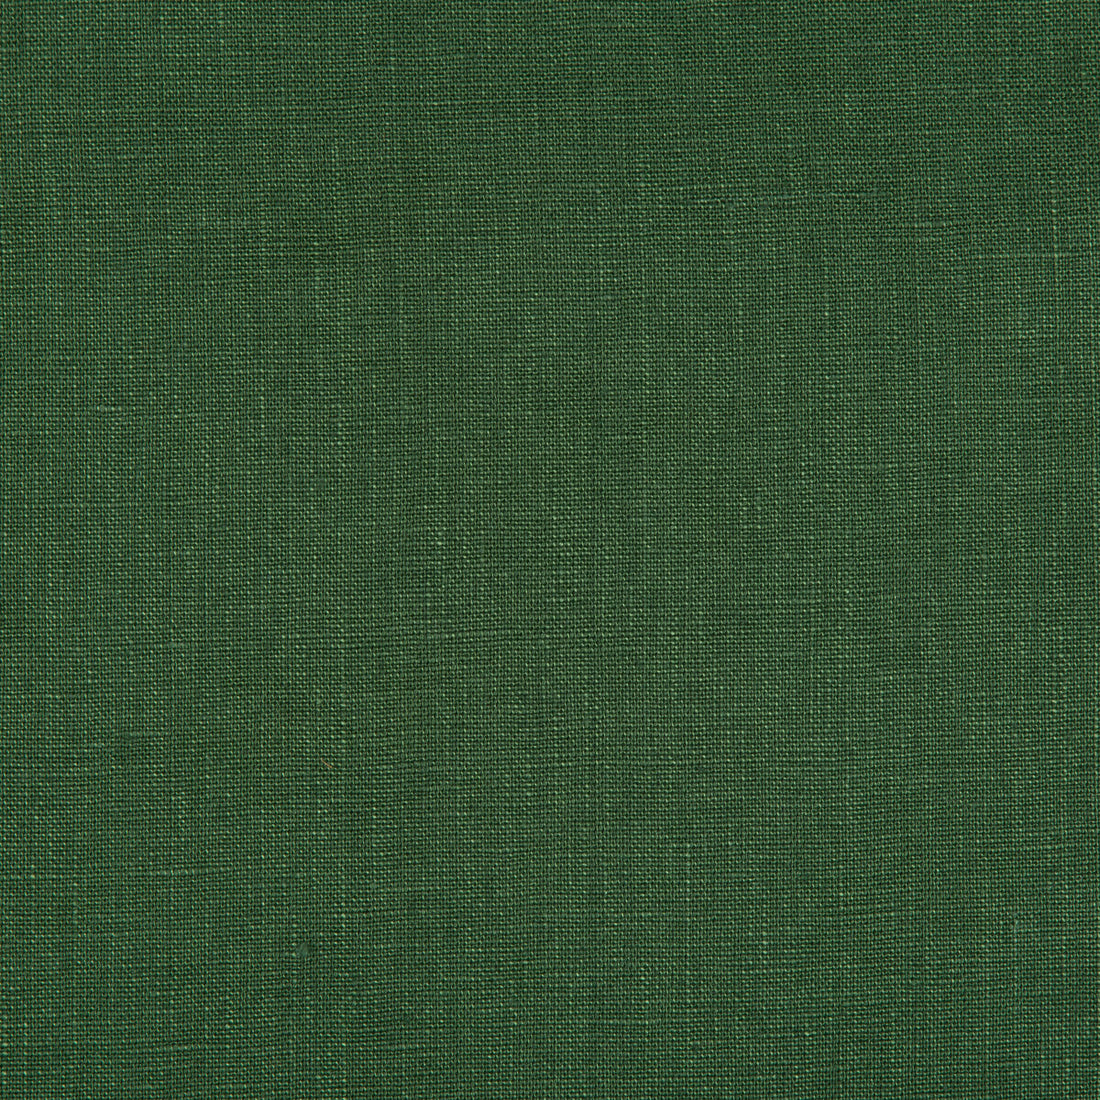 Kravet Basics fabric in 24570-3 color - pattern 24570.3.0 - by Kravet Basics